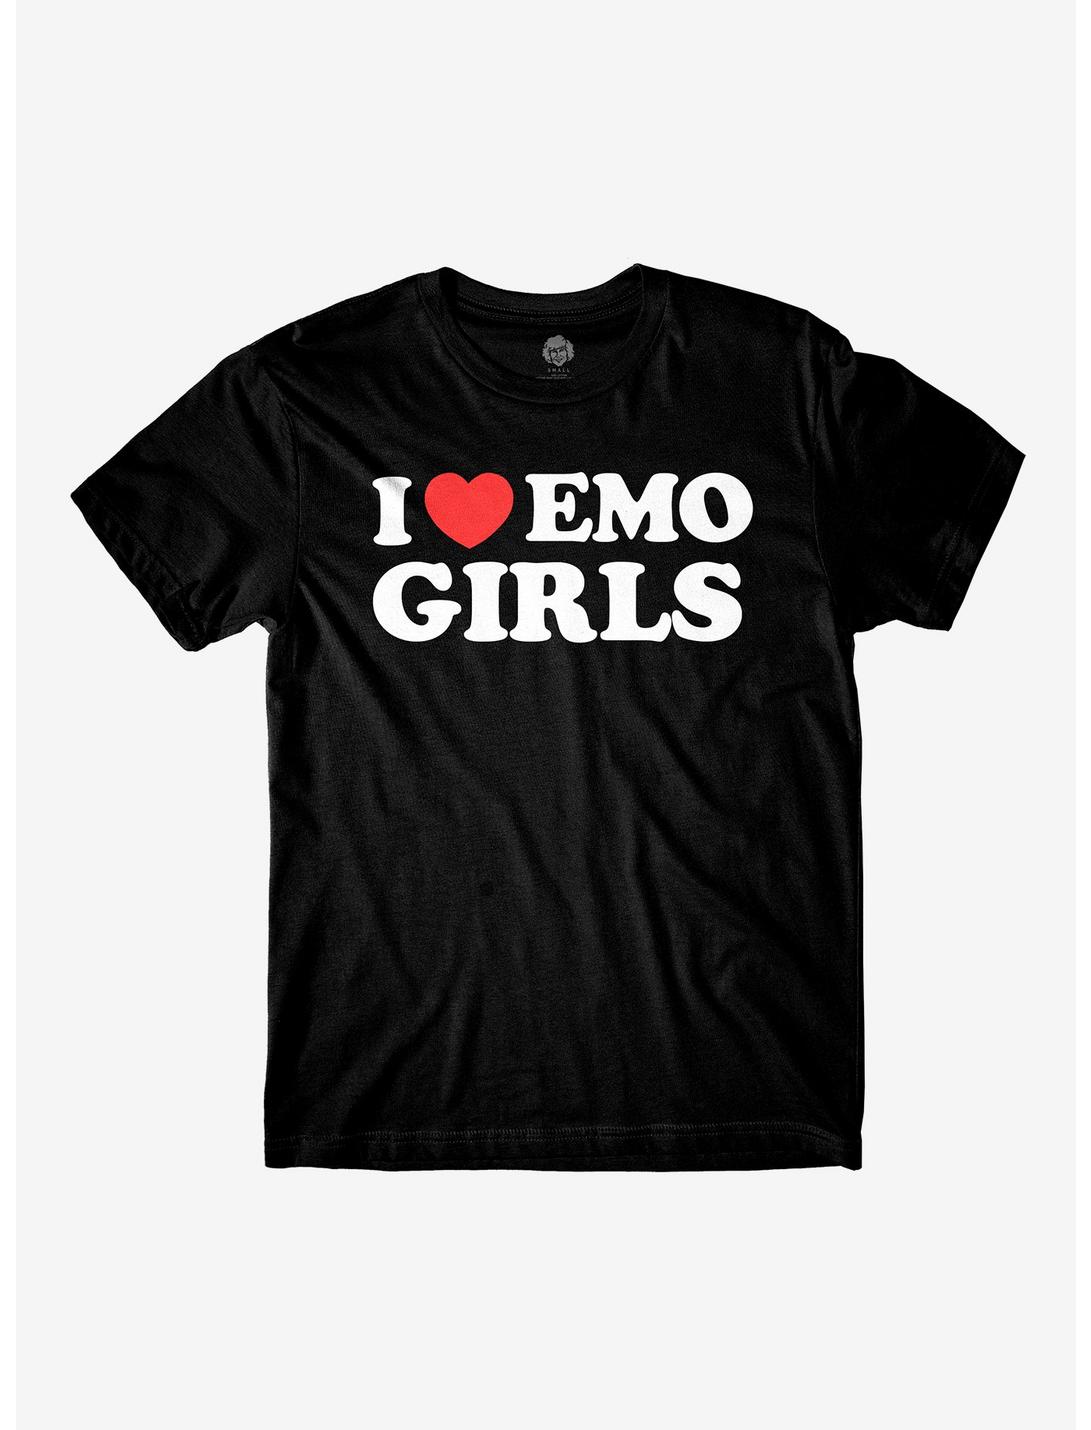 I Heart Emo Girls T-Shirt By Danny Duncan, BLACK, hi-res